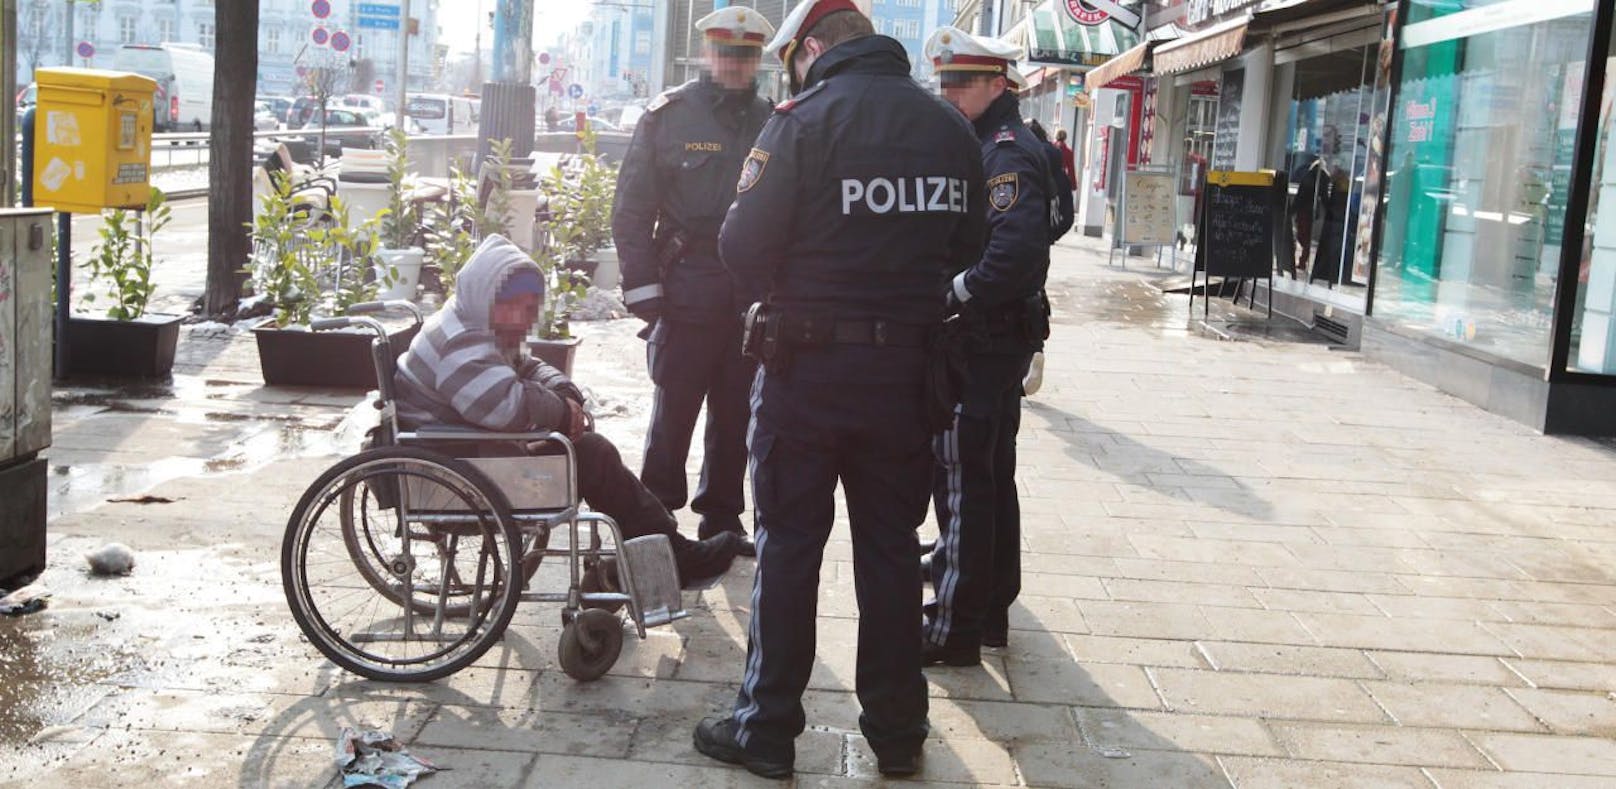 Polizei kontrollierte zwei Tage lang Bettler (Symbolbild) / foto: sabine hertel / tageszeitung heute